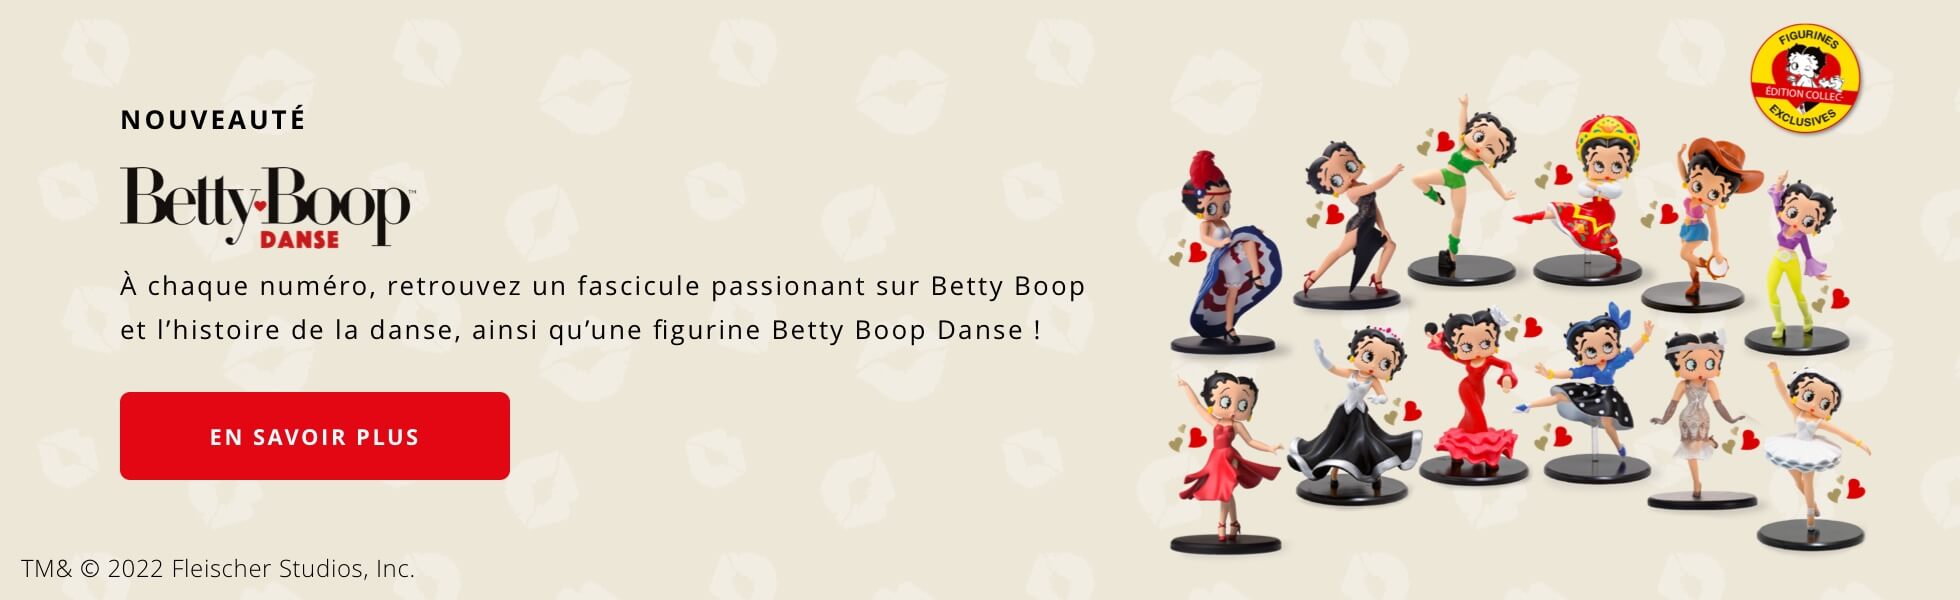 Betty Boop Danse